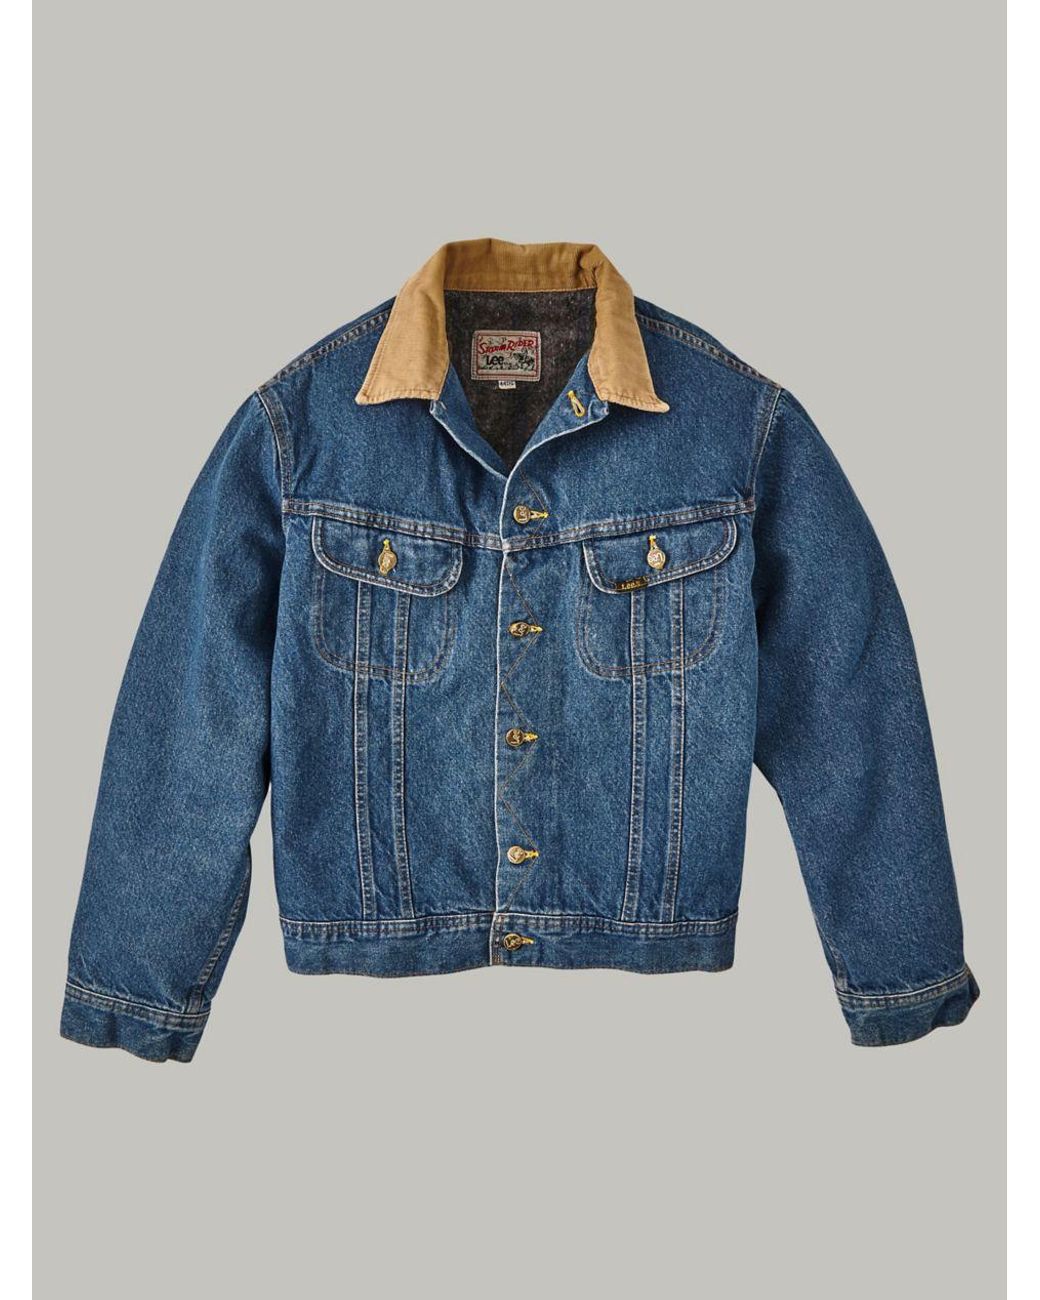 Lee Jeans Vintage Storm Rider Jacket Sr37 Medium in Blue for Men | Lyst